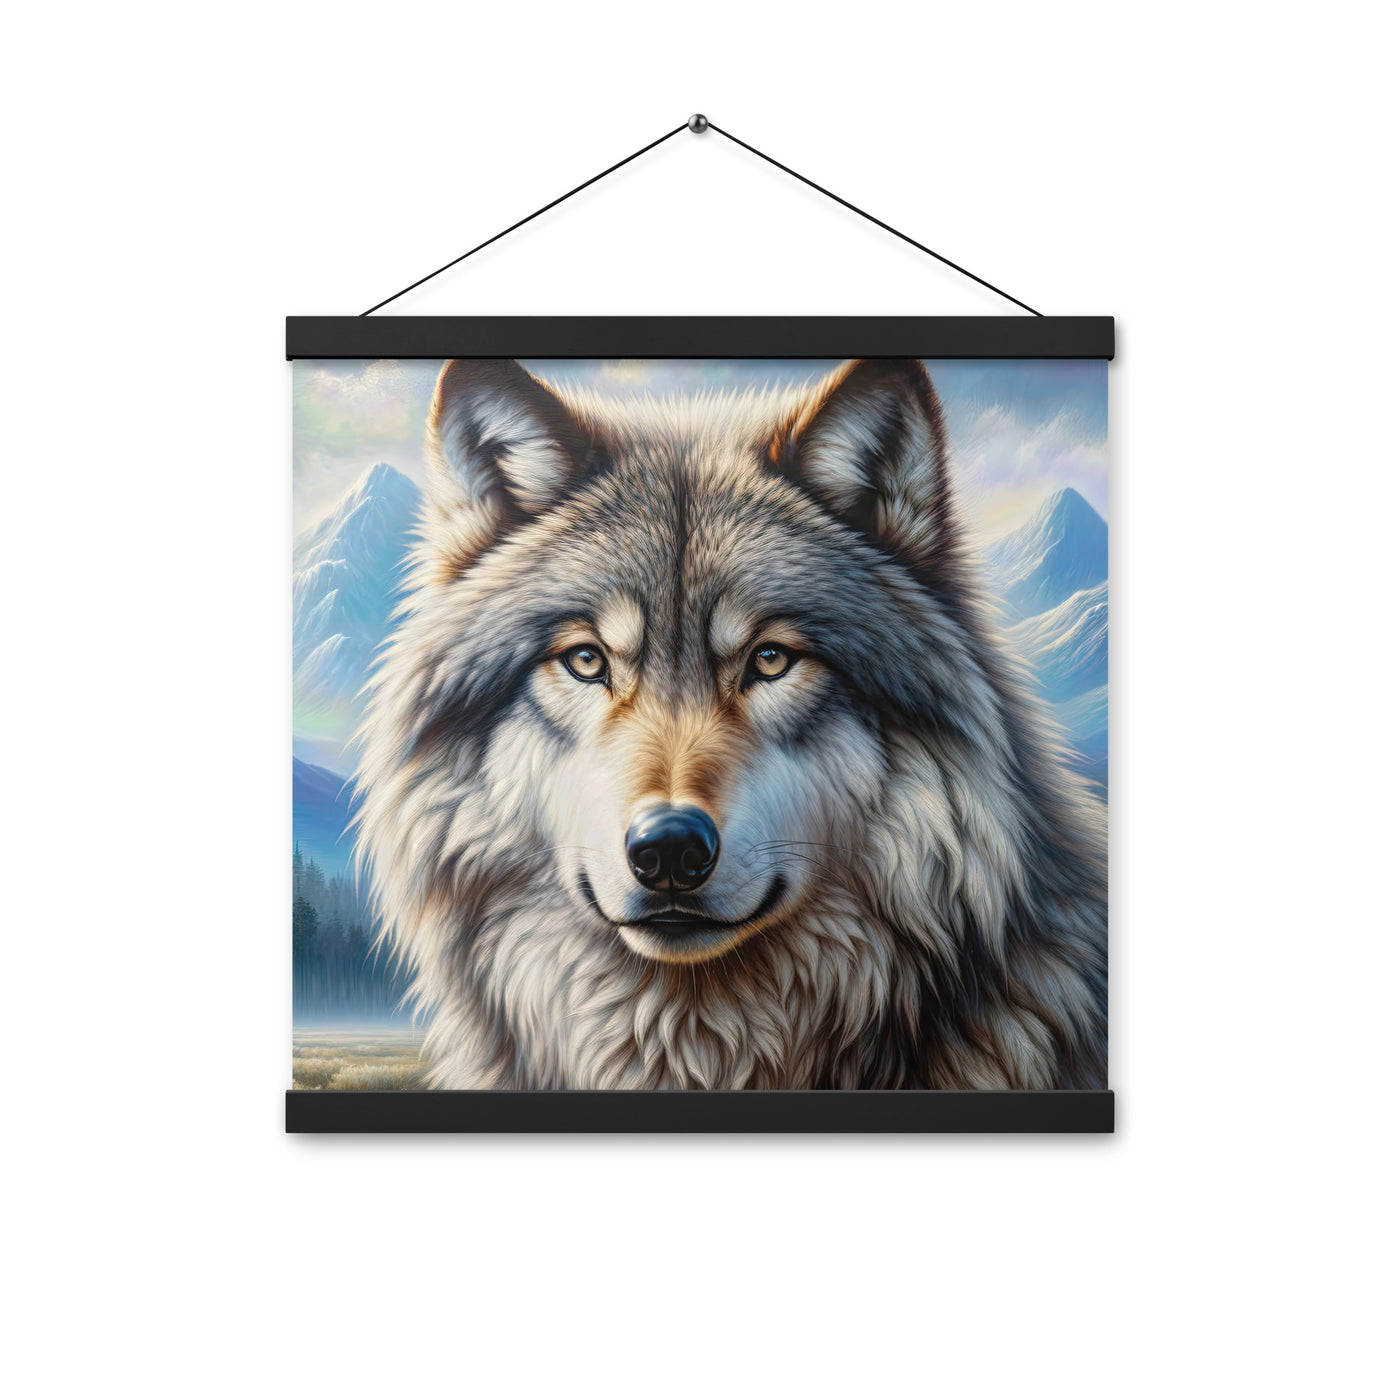 Porträt-Ölgemälde eines prächtigen Wolfes mit faszinierenden Augen (AN) - Premium Poster mit Aufhängung xxx yyy zzz 40.6 x 40.6 cm